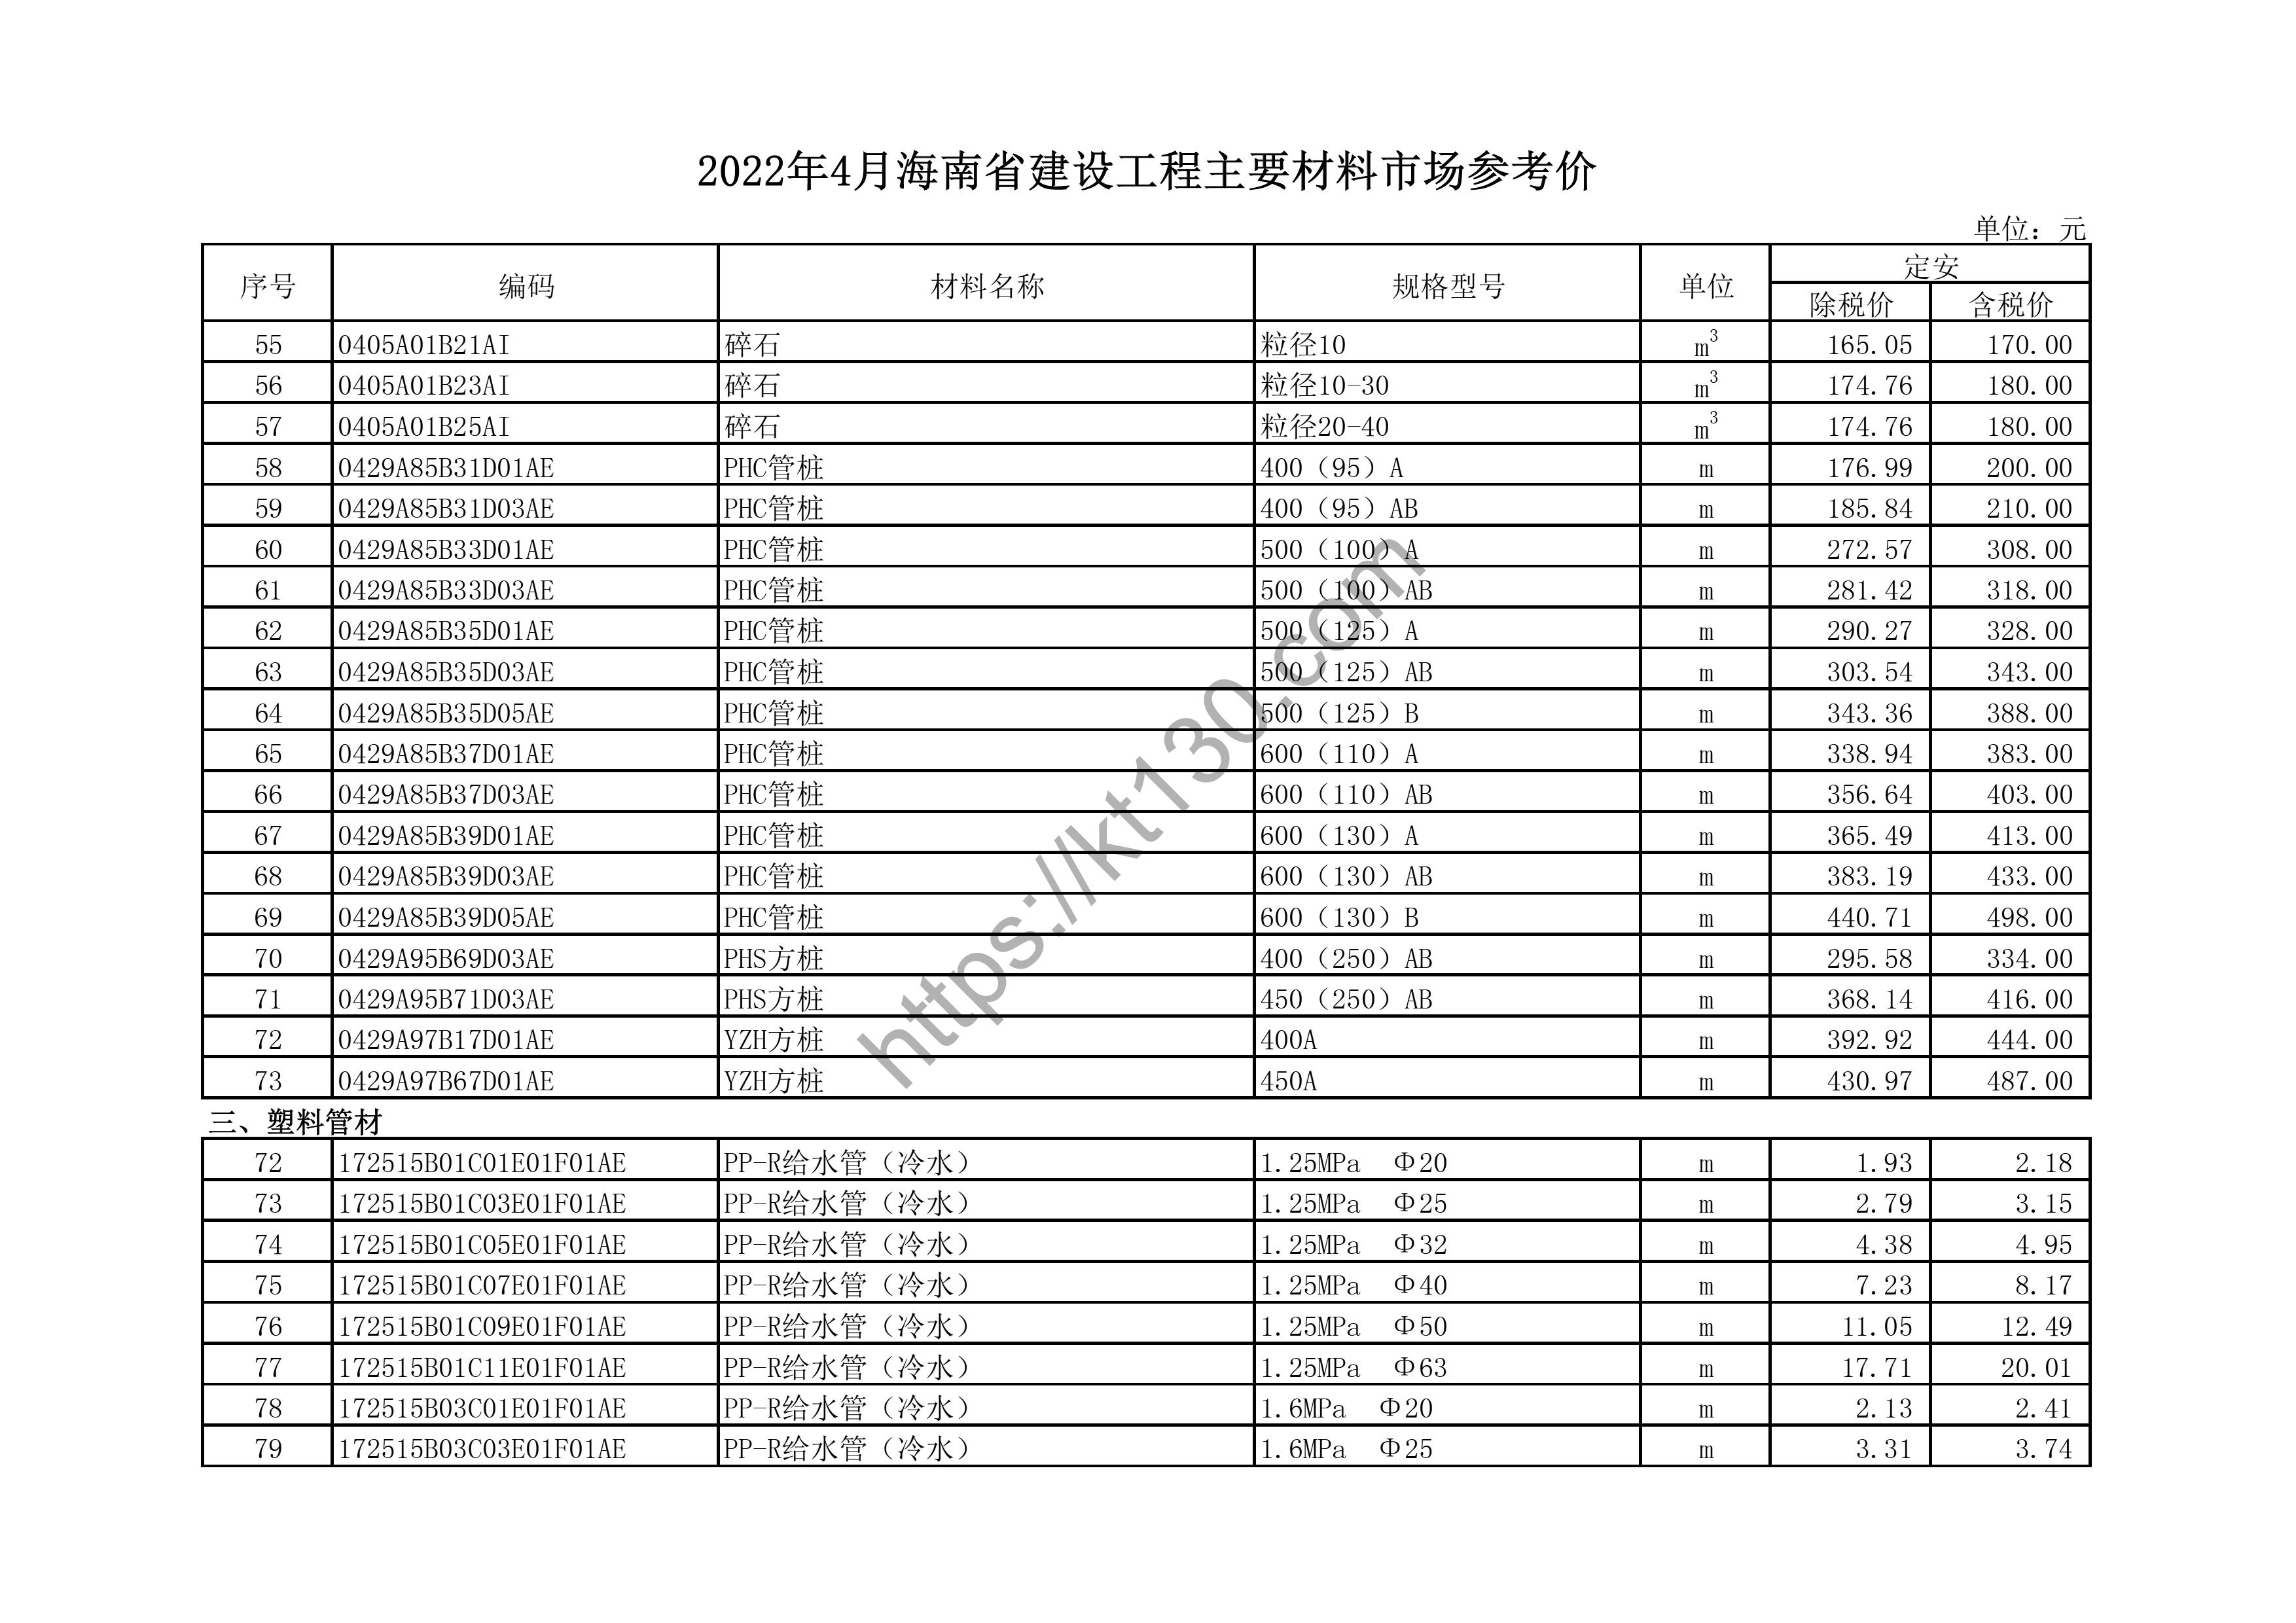 海南省2022年4月建筑材料价_PPR管材_44141